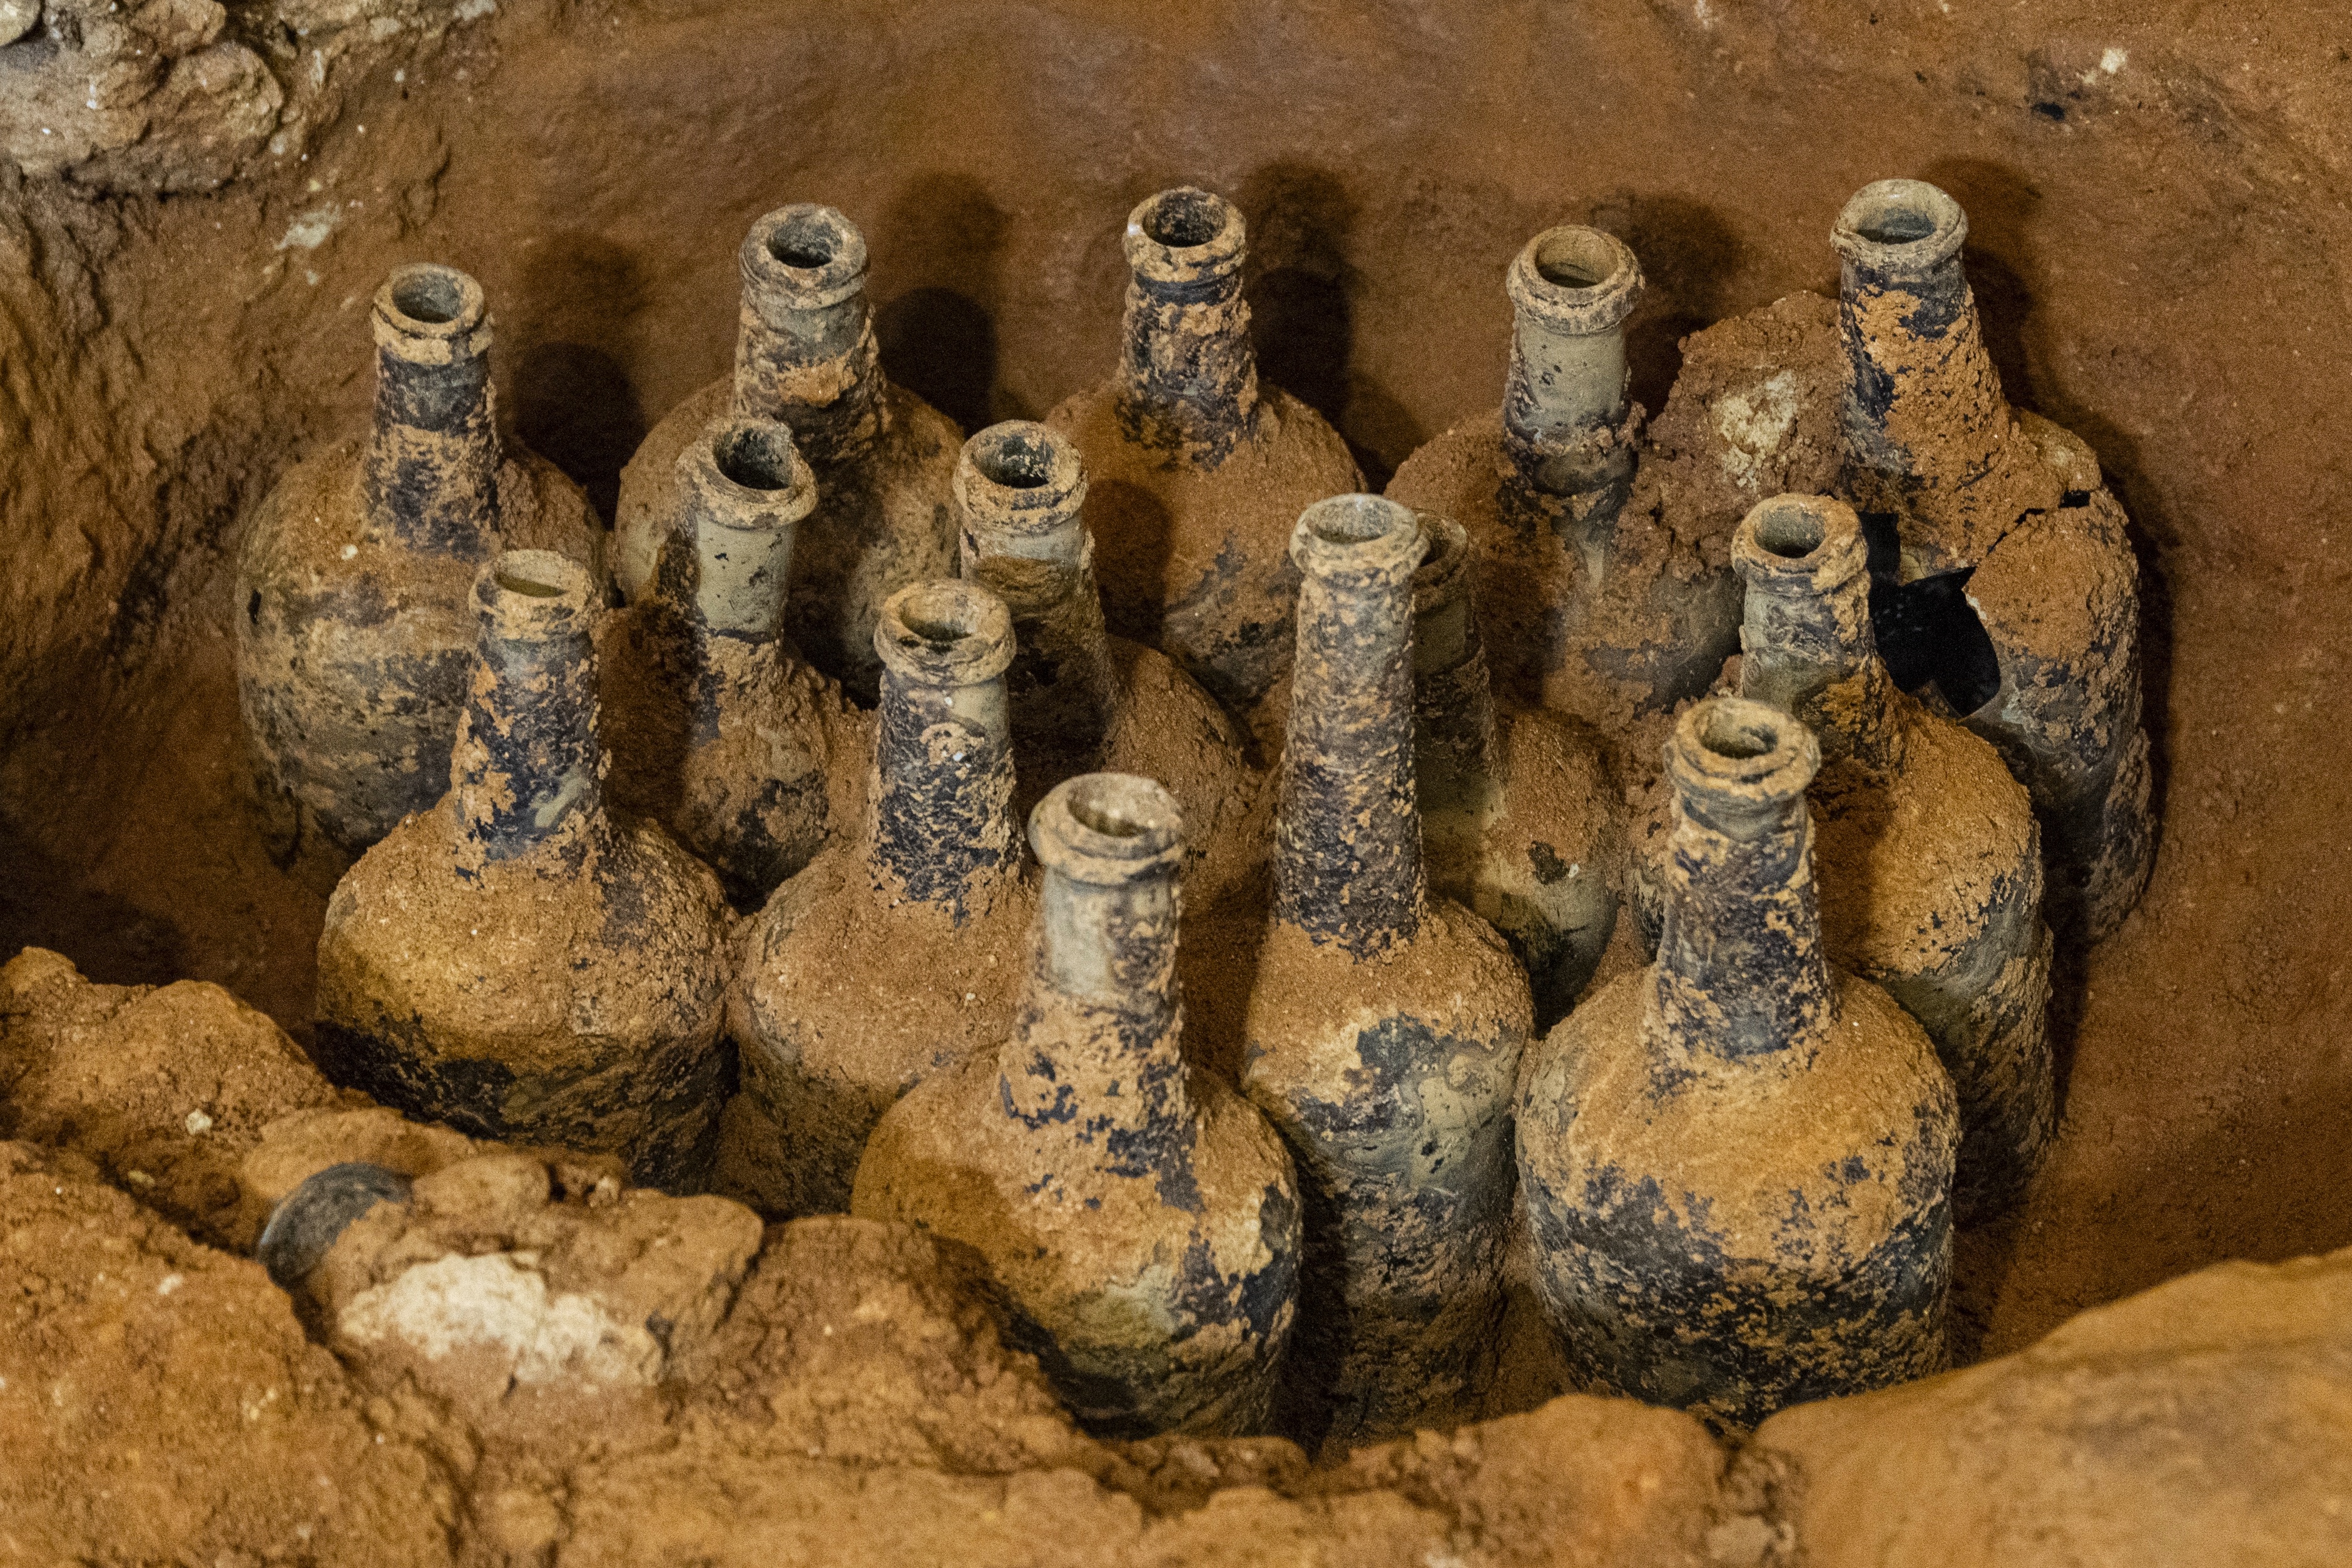 Les fouilles d’un manoir de George Washington découvrent des fruits en bouteille conservés datant des années 1700